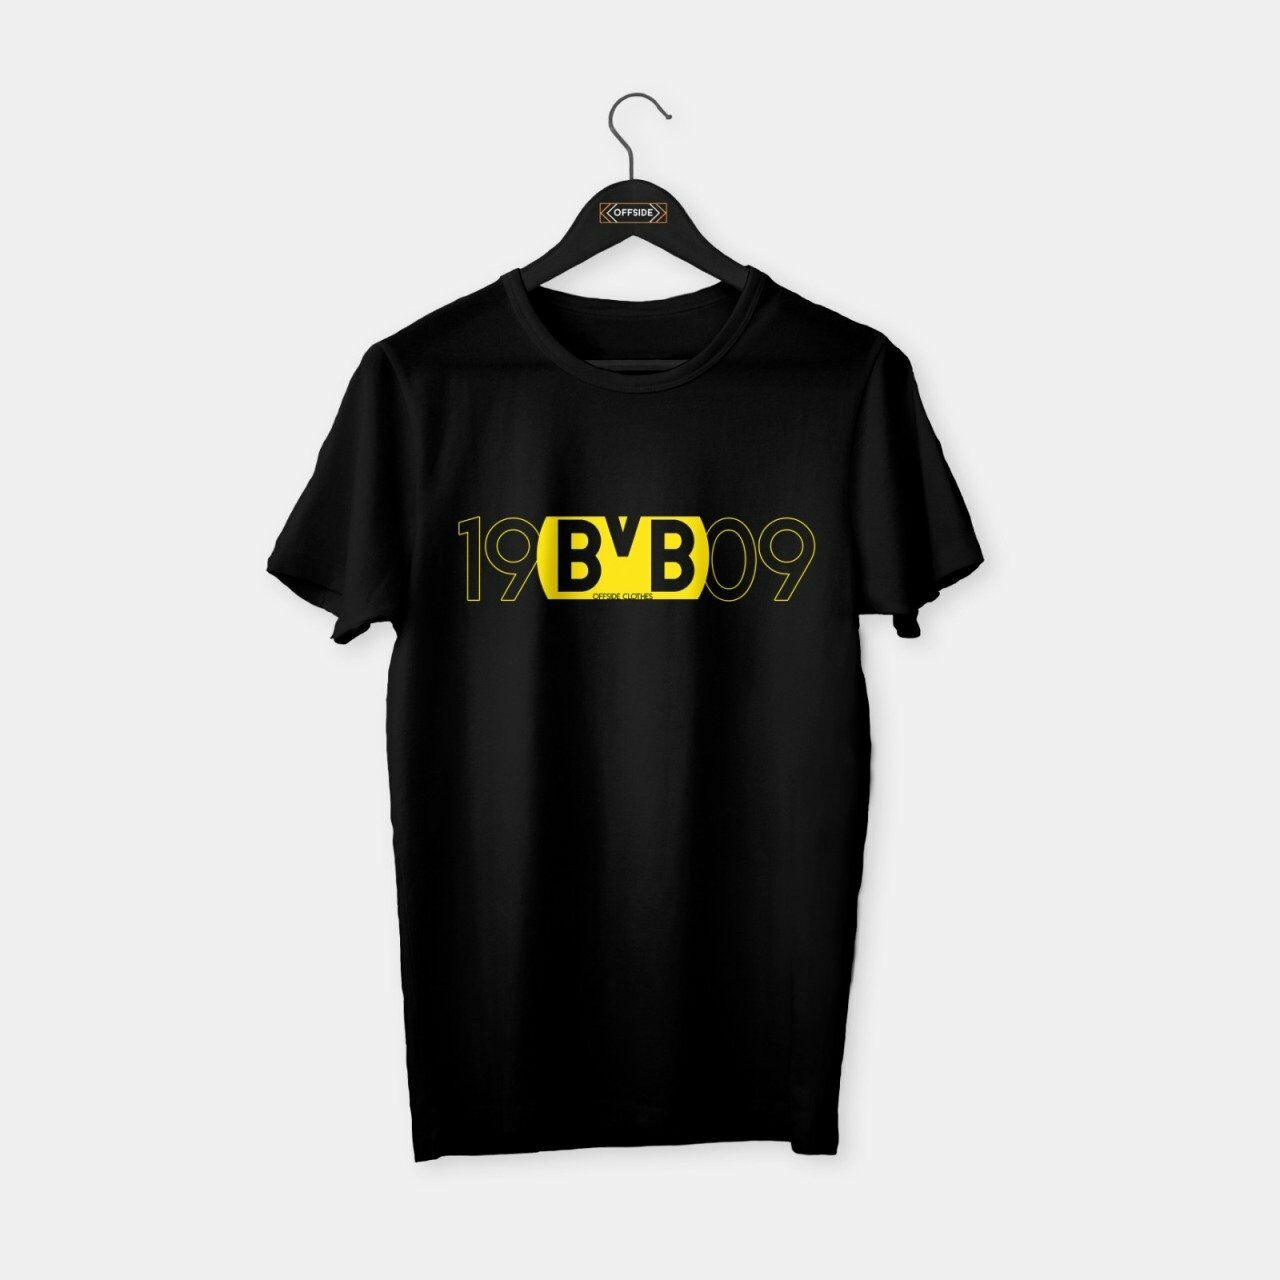 Dortmund - 1909 BVB T-shirt